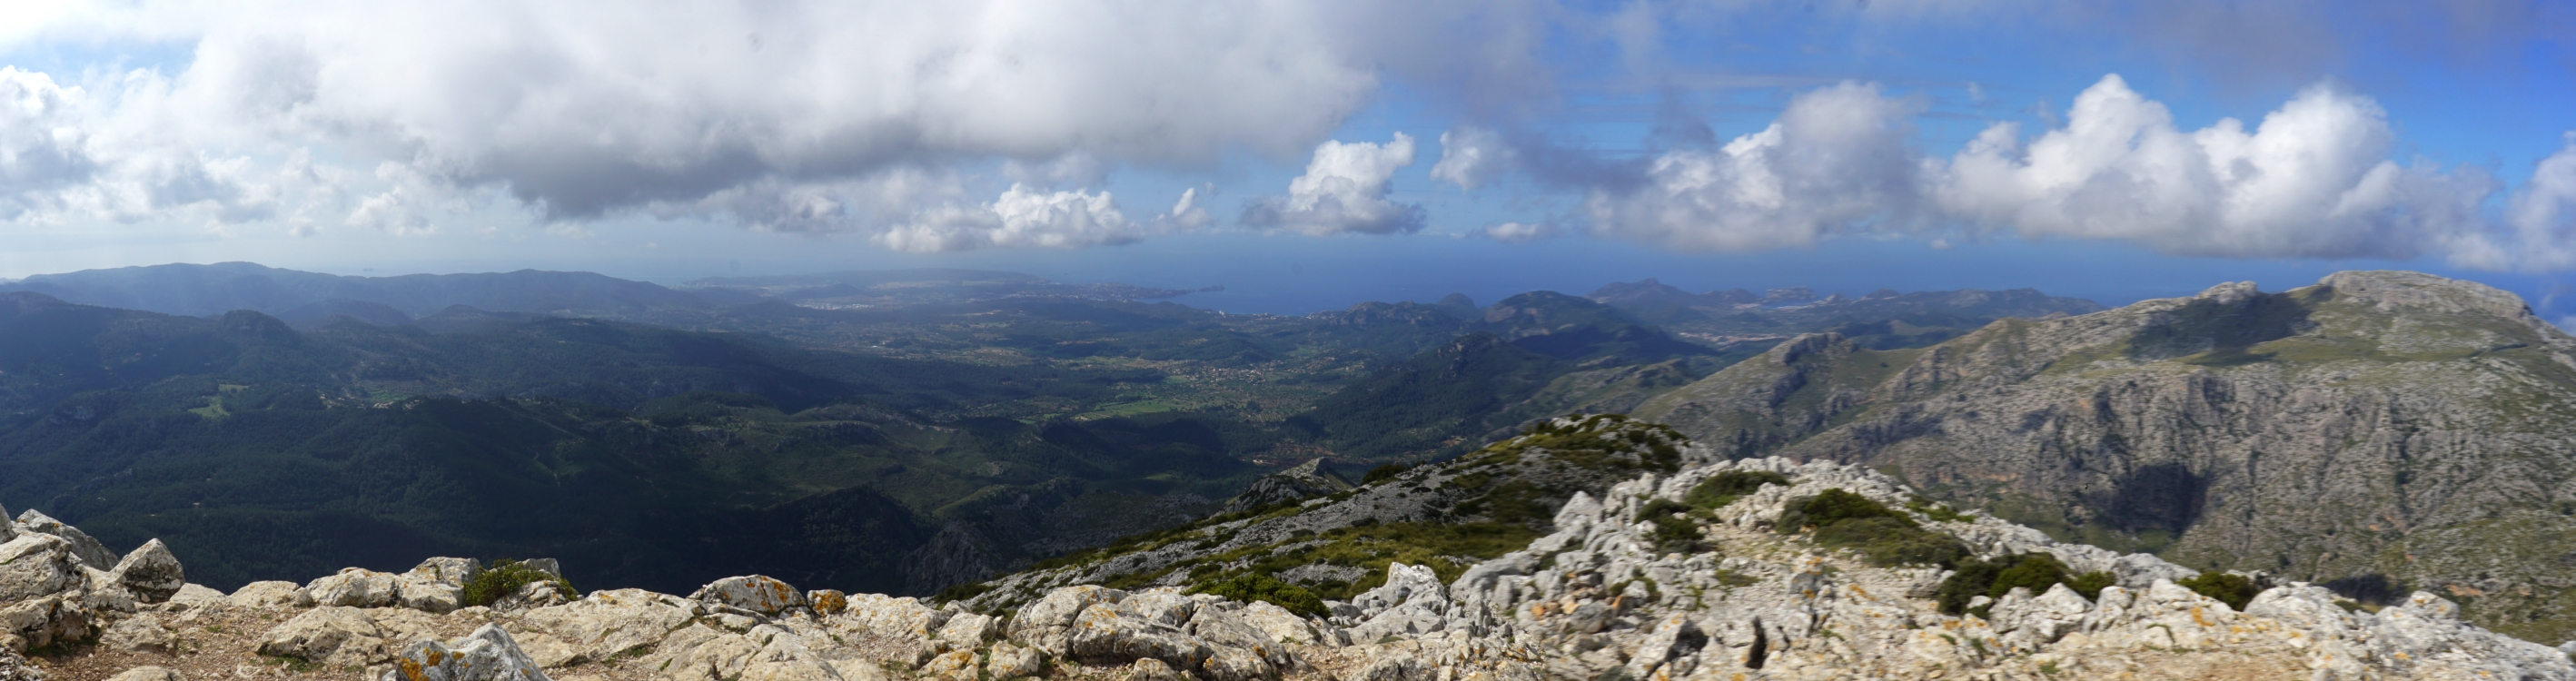 Der Blick vom Gipfel des Puig de Galatzó über die Westküste.